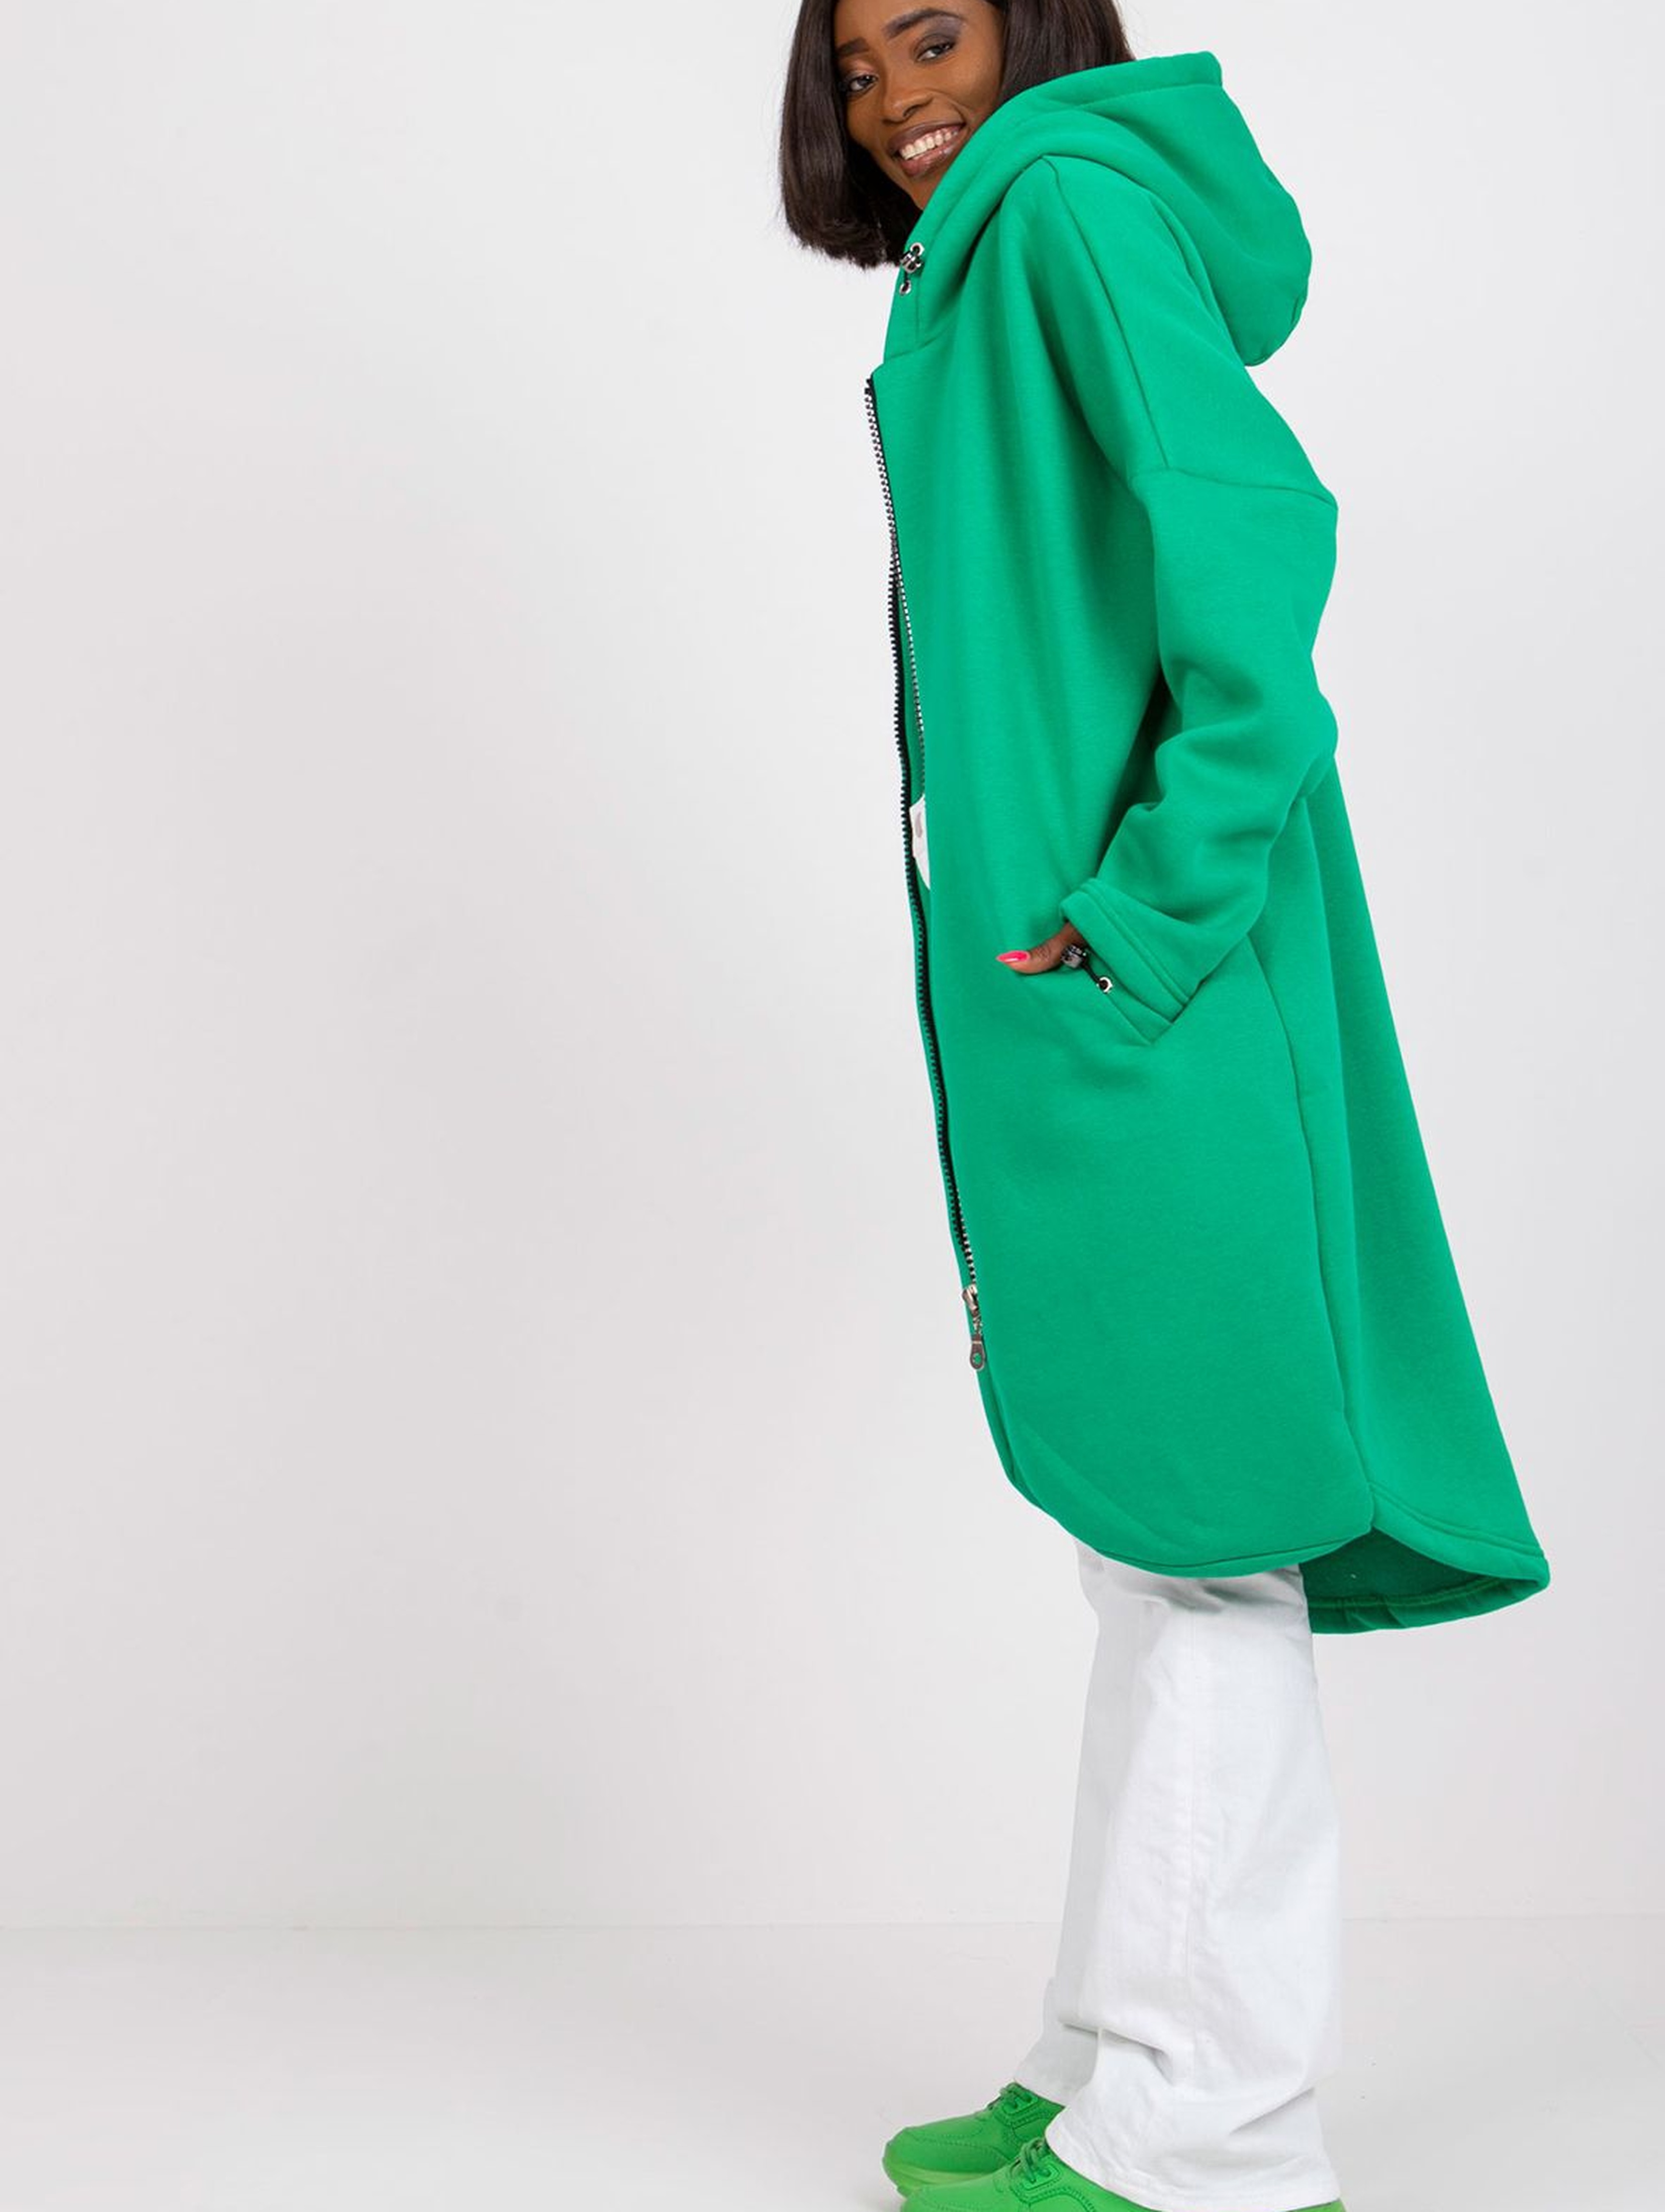 Bluza damska długa  rozpinana z kapturem - zielona długa